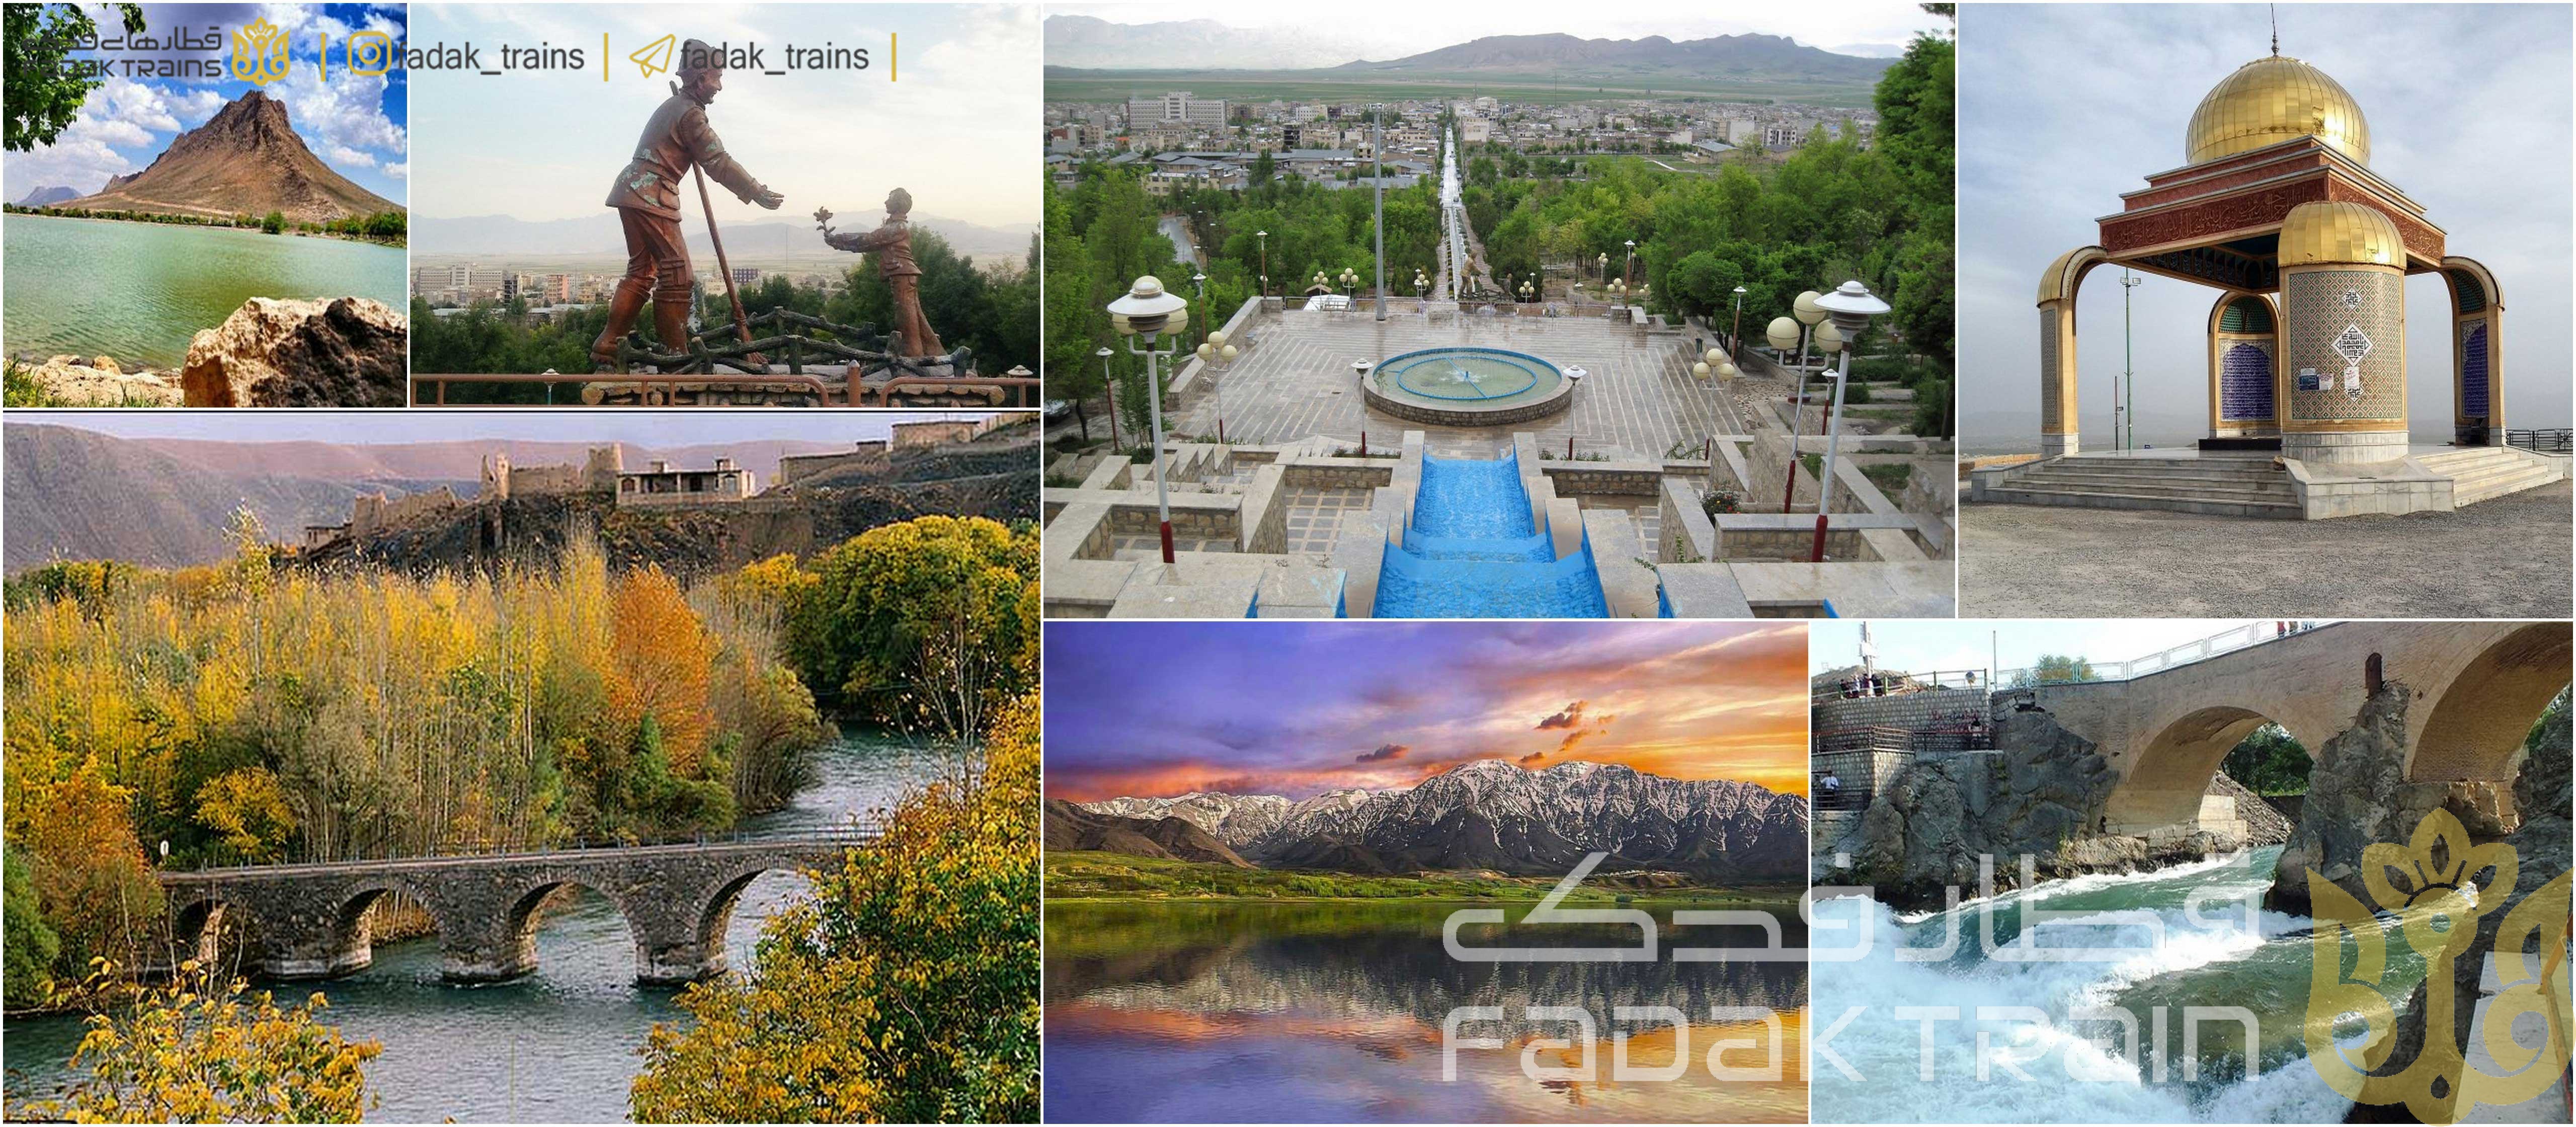 جاذبه های گردشگری شهر کرد را بشناسید و به خاطر بسپارید!